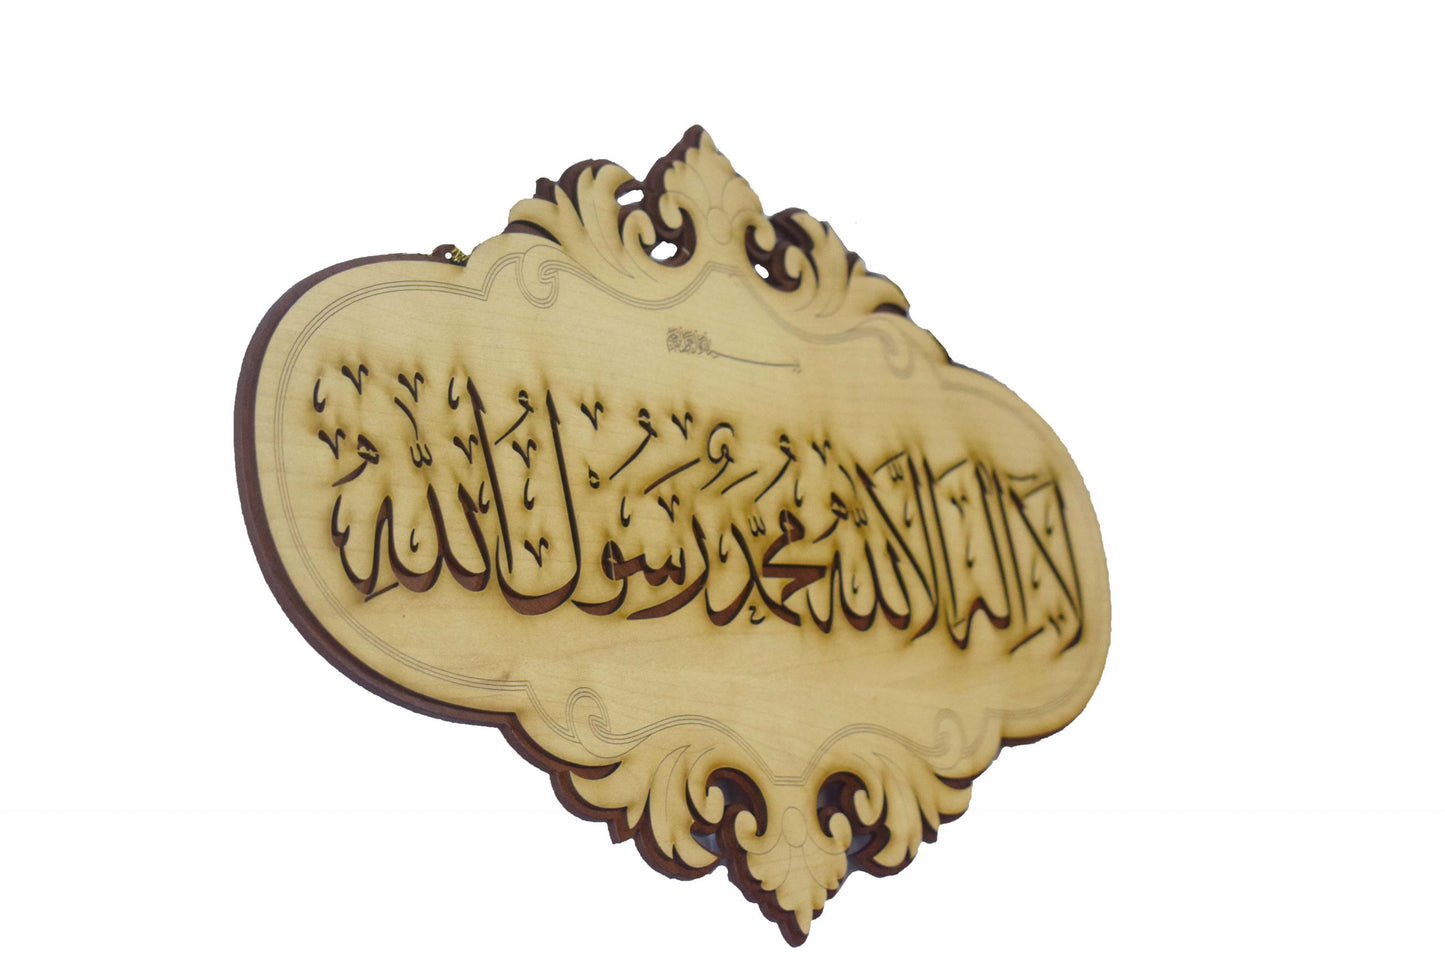 Islamic Wall Frame Wooden Home DÉCOR Wall Hanging KALMA E PAK “laa ilaahah illa allaah muhammadun rasool ullaah”| MASHALLAH| HAZA MIN FAZLI RABBI 10 INCH by 16 INCHES